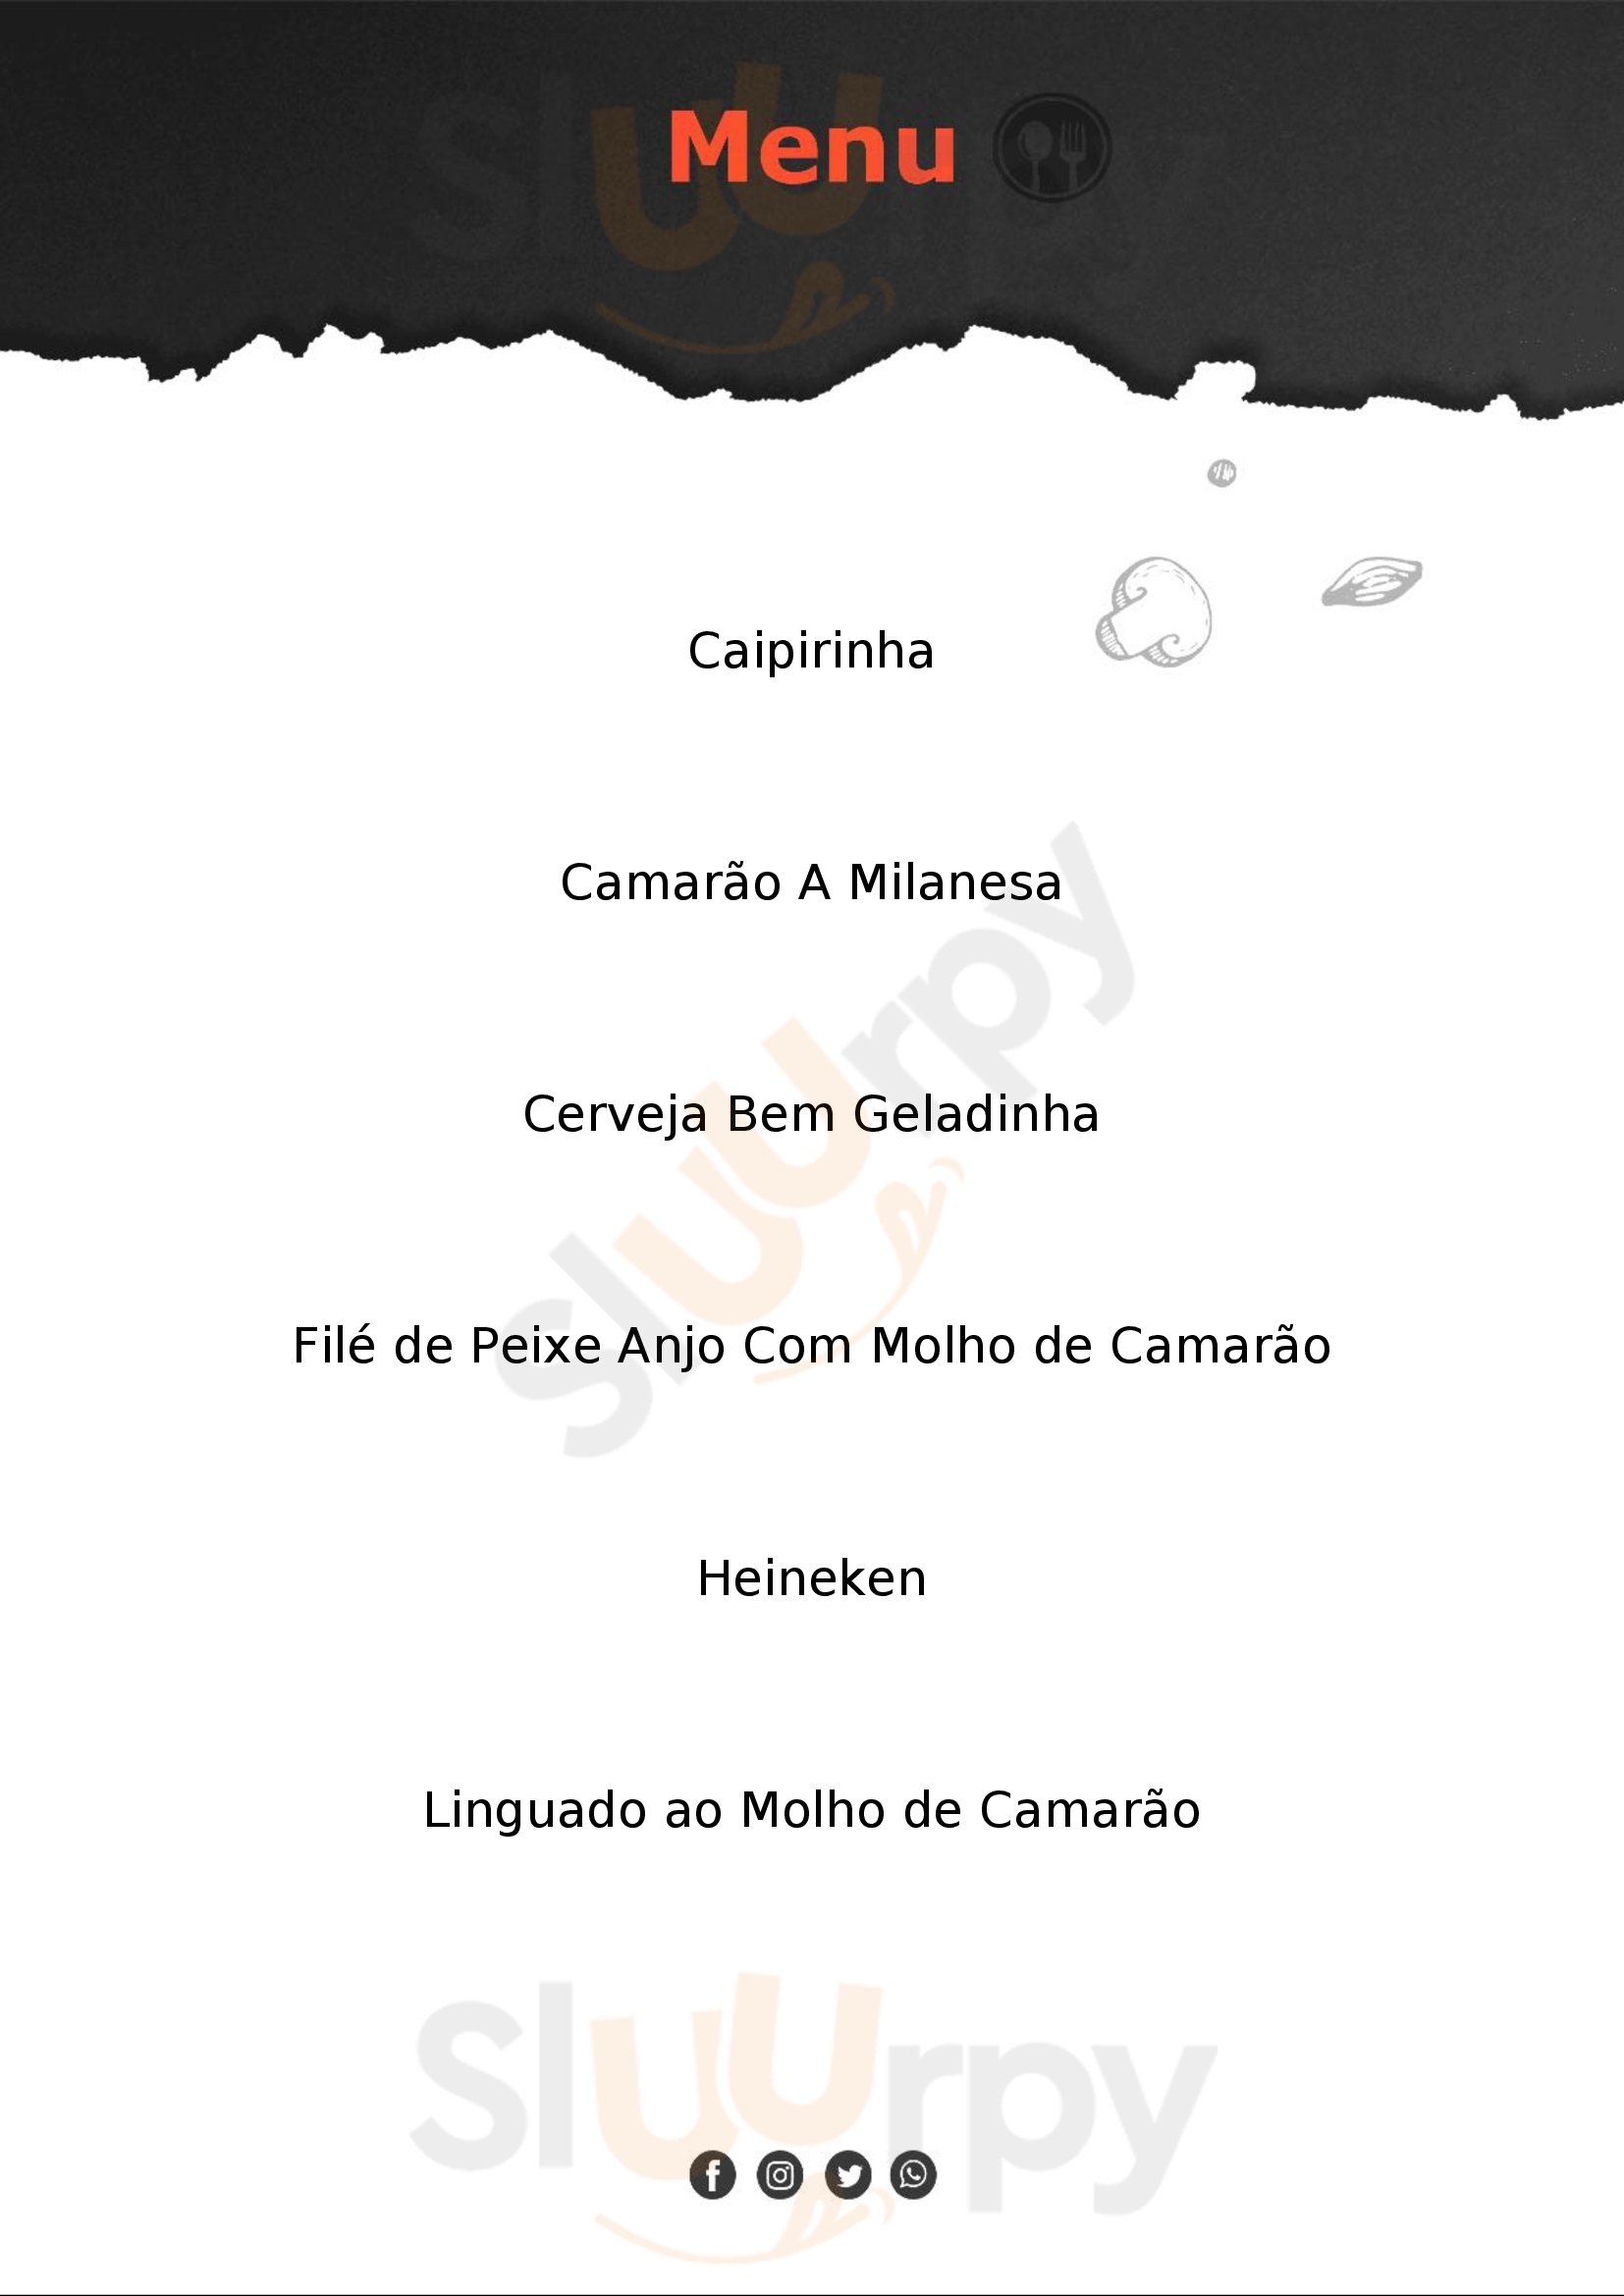 Free Lanches Restaurantes São Lourenço do Sul Menu - 1